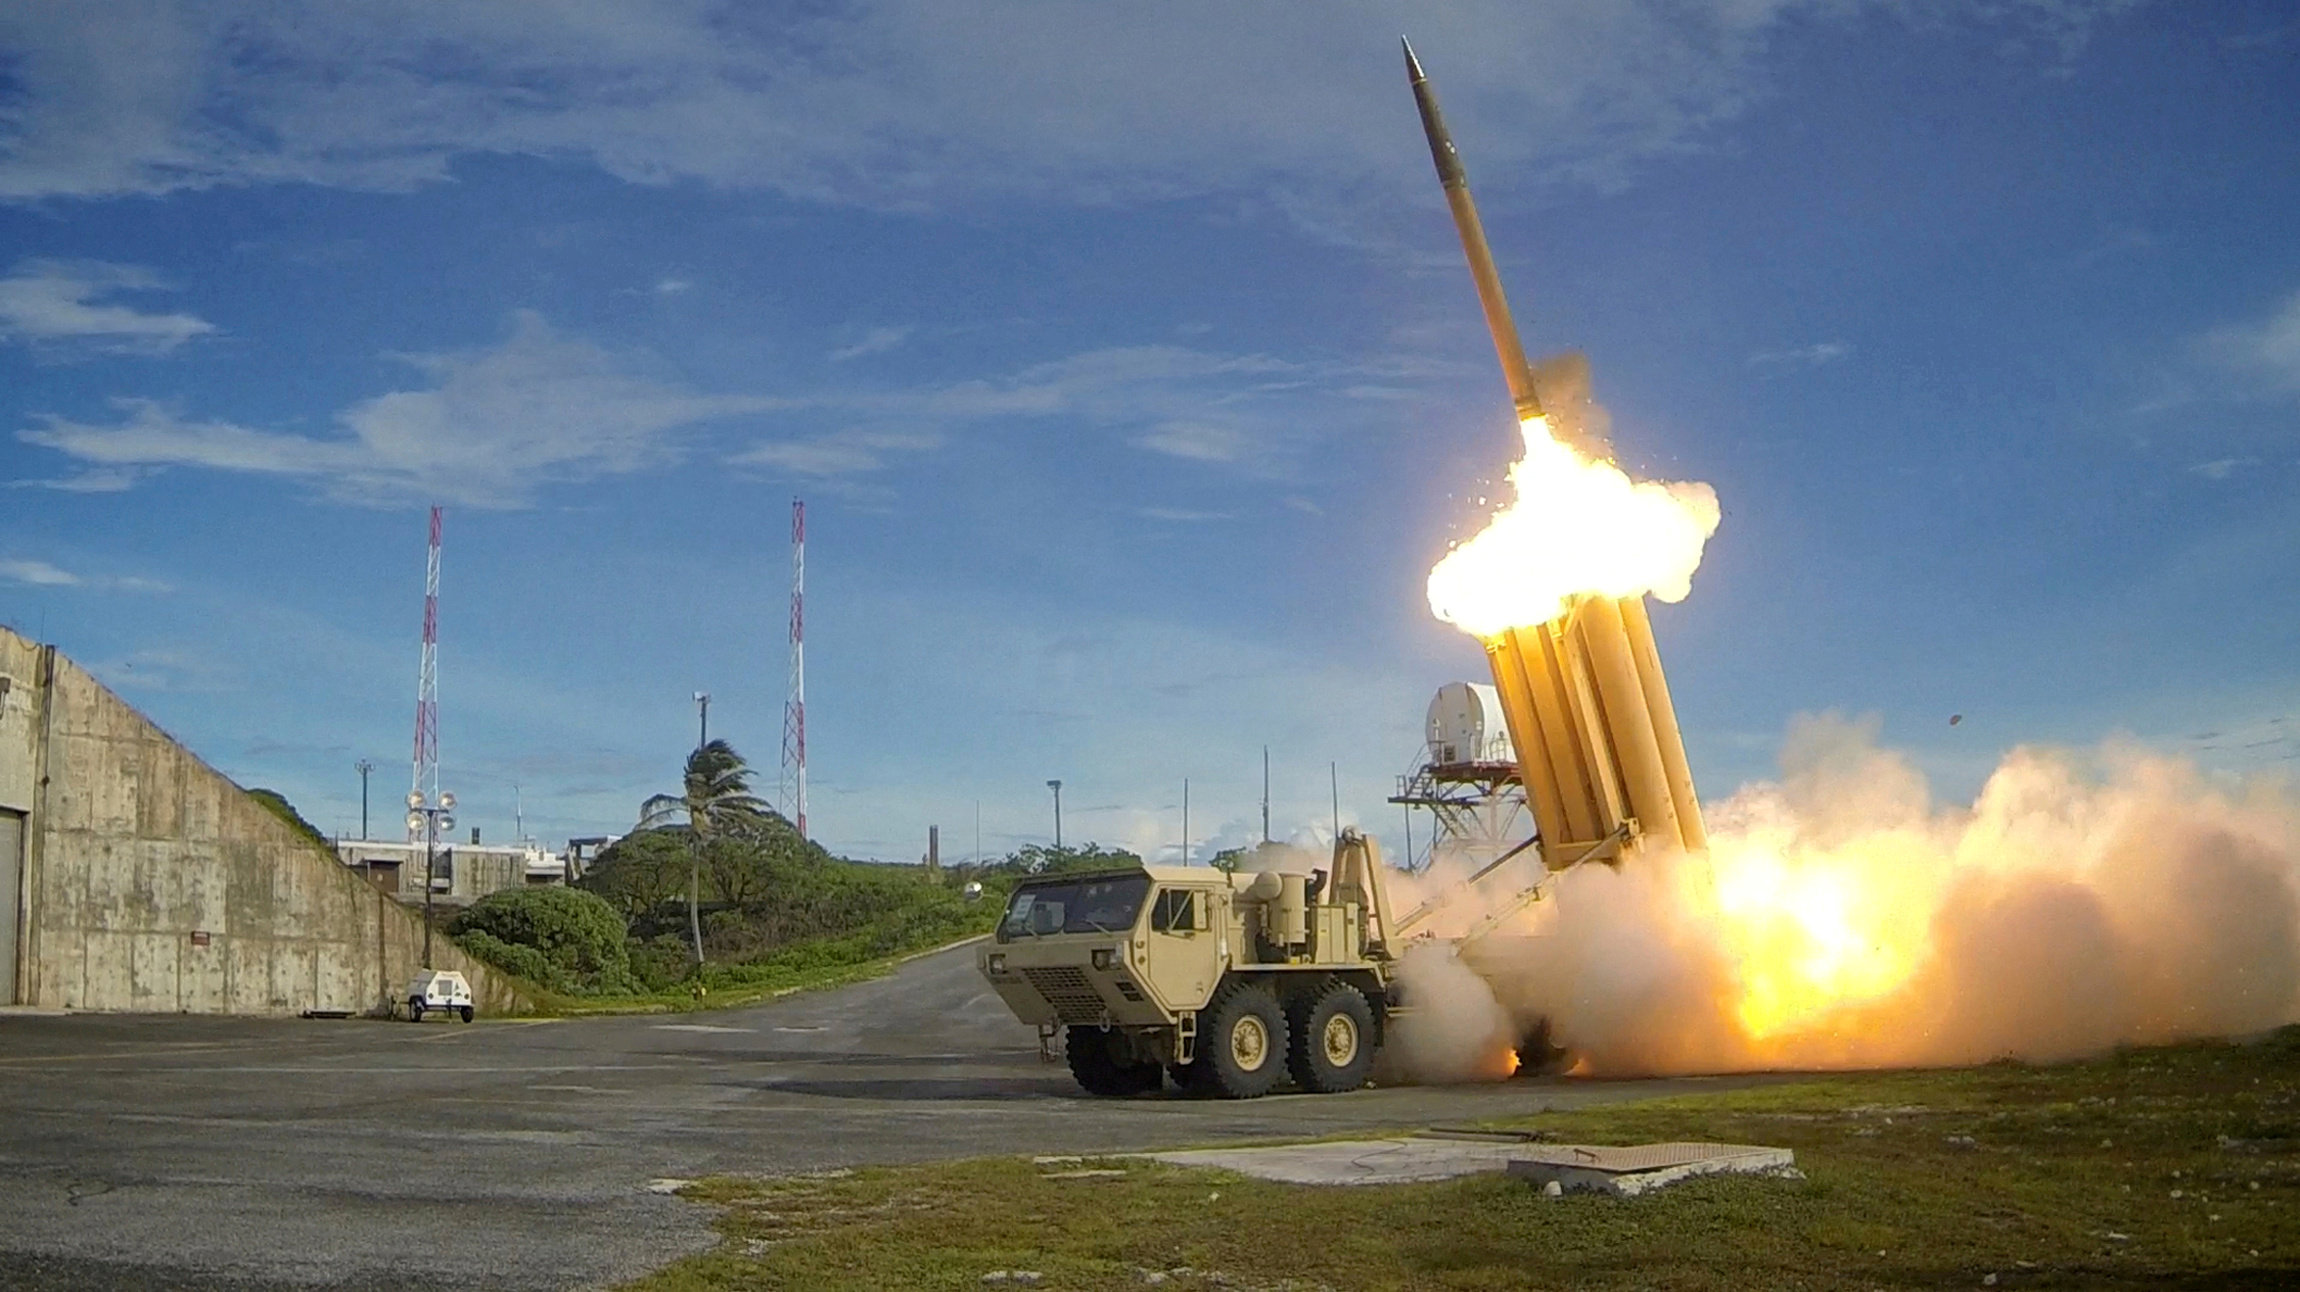 Corea del Norte lanza dos misiles hacia el mar, reporta Corea del Sur 7LMQ7WKNNVF3JDGAHJU5R2YO5A